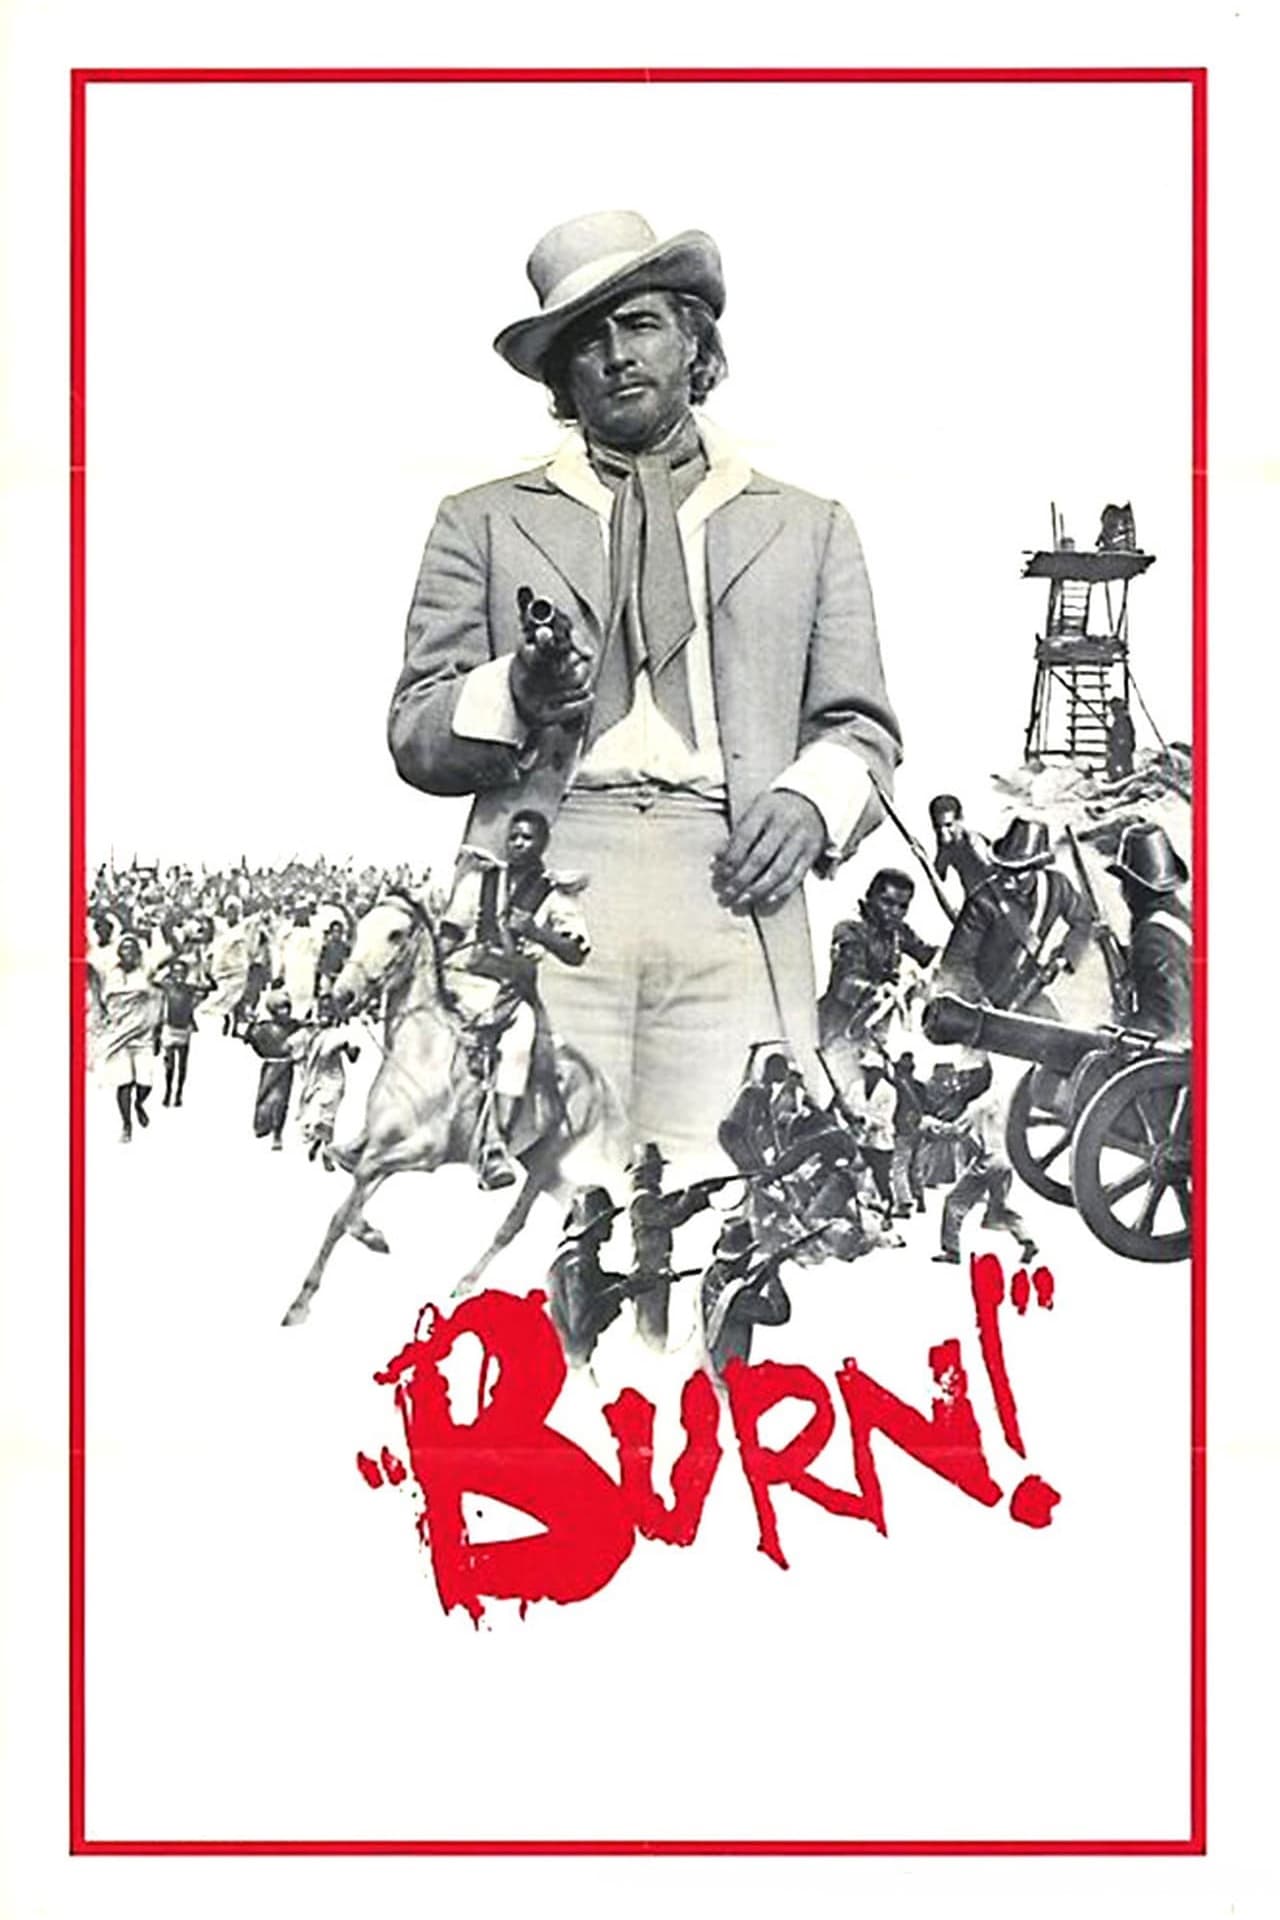 Burn! (1969)